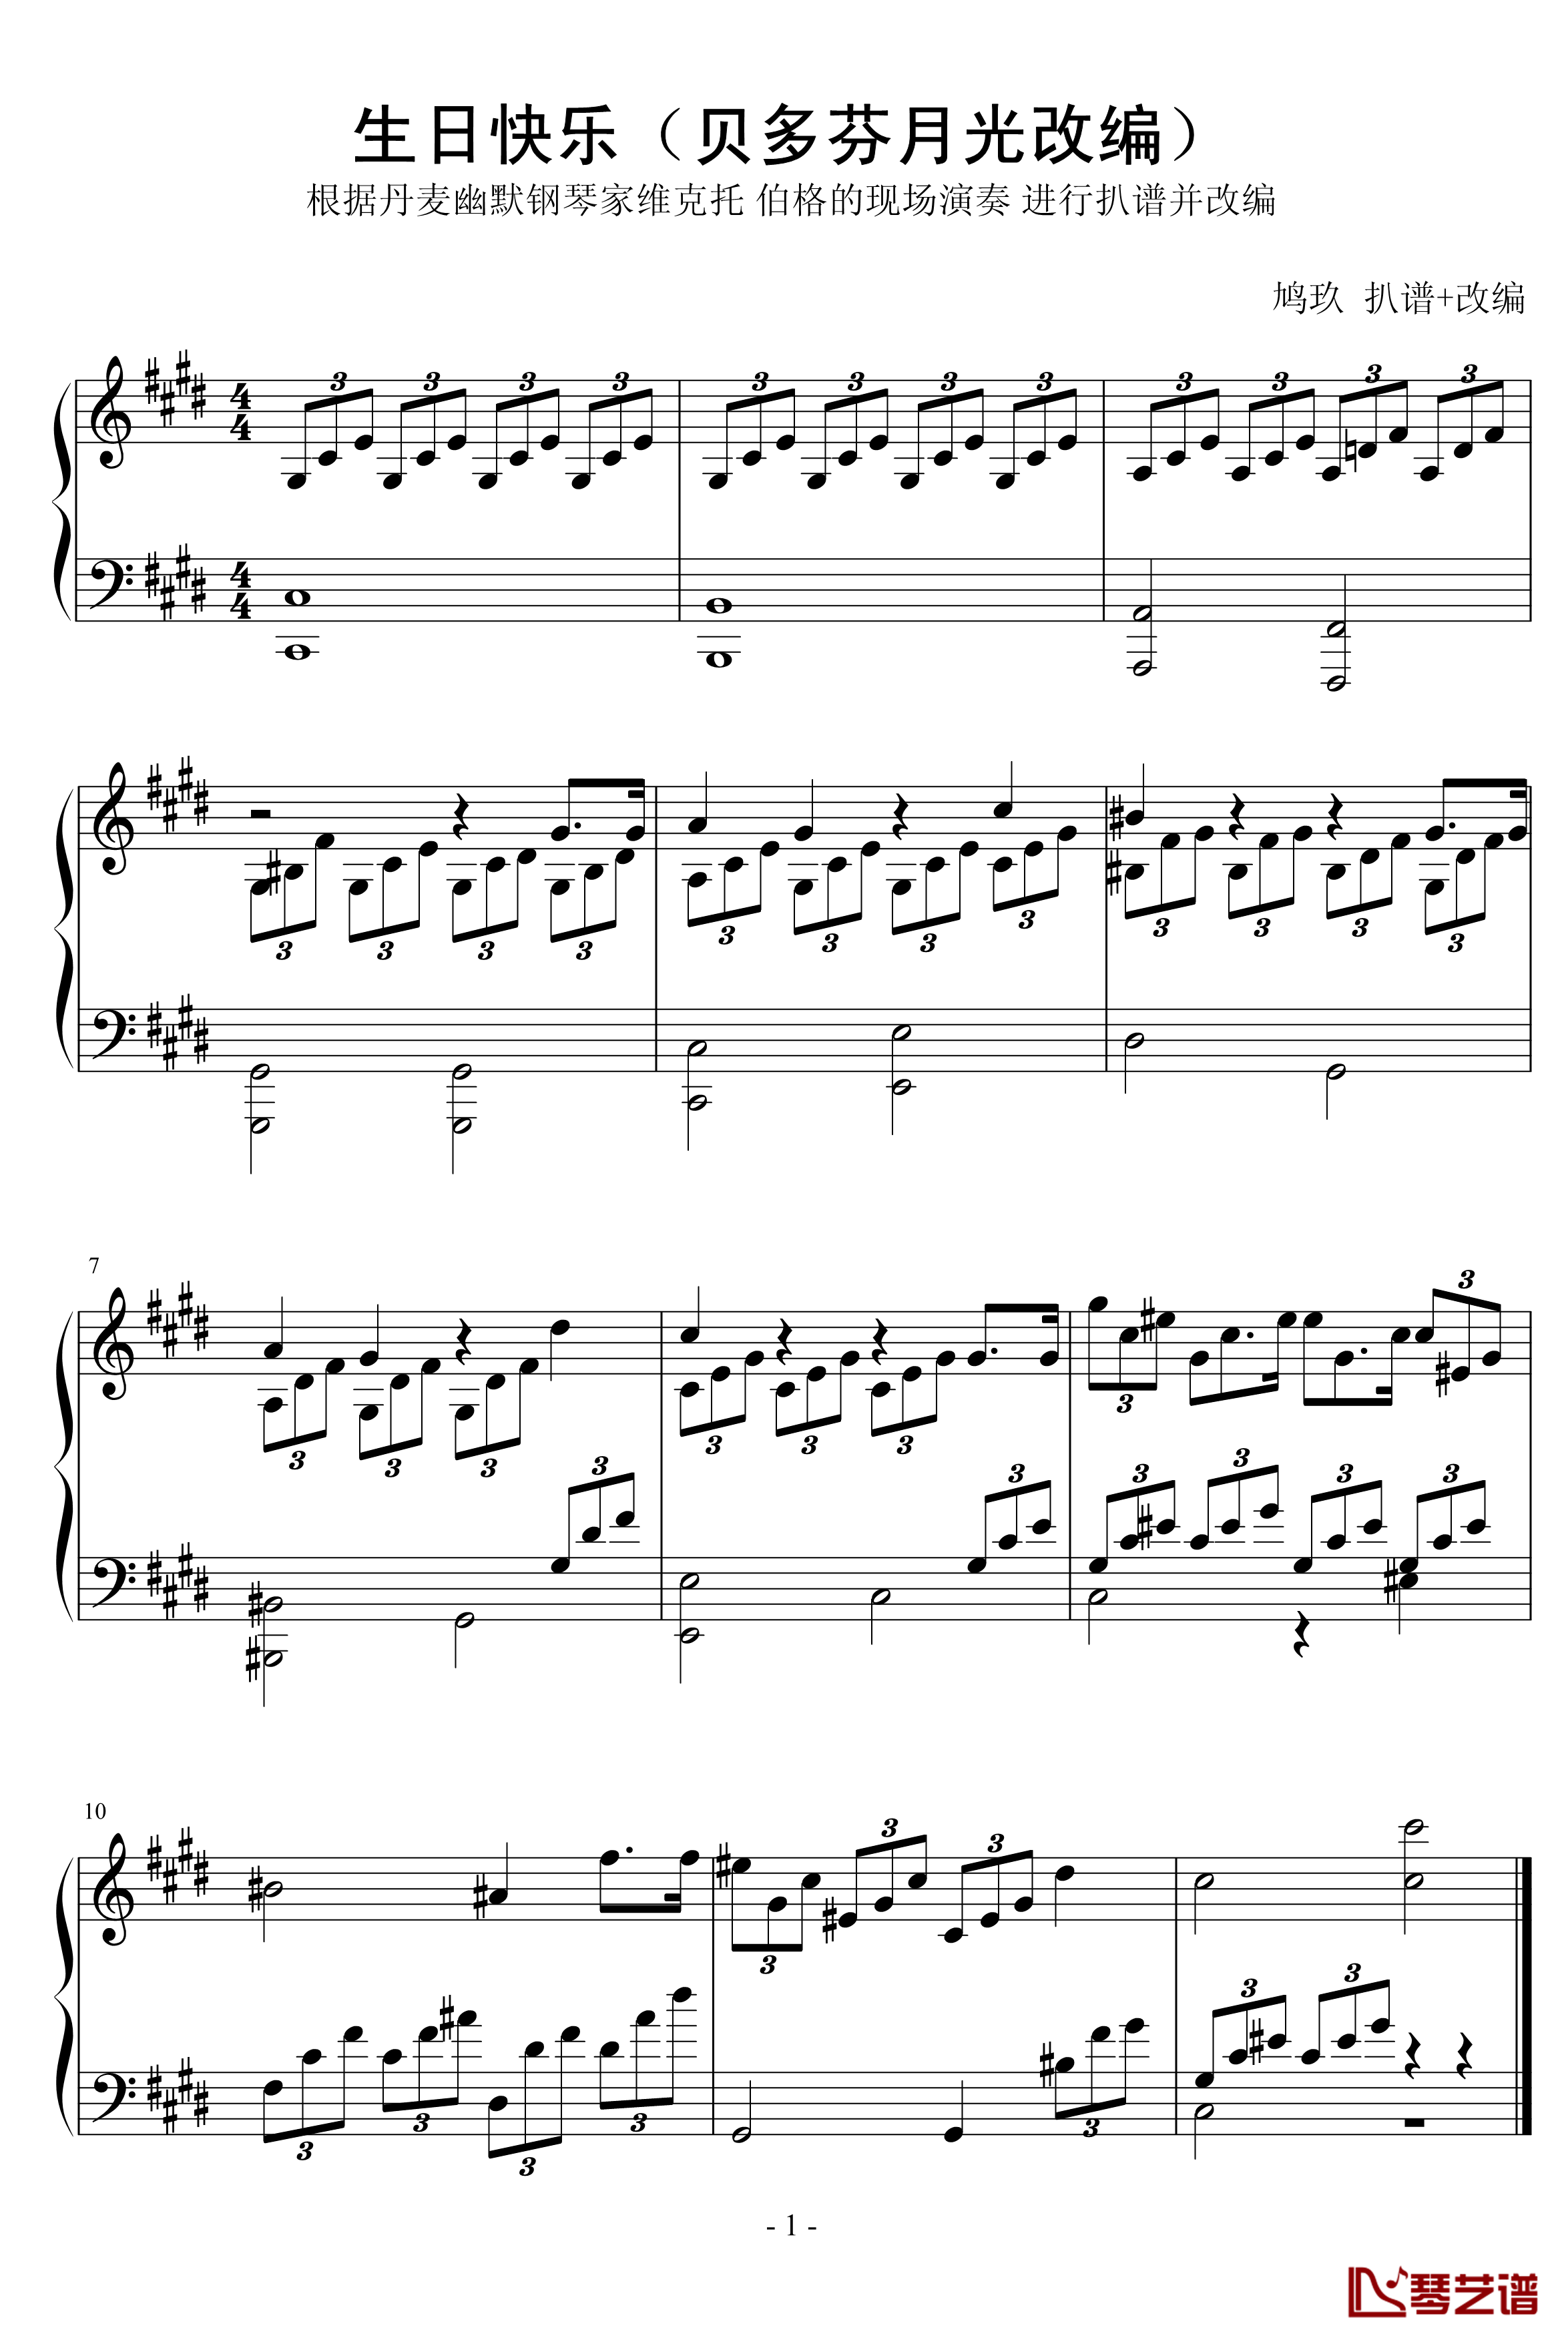 生日快乐钢琴谱-维克托伯格版本1